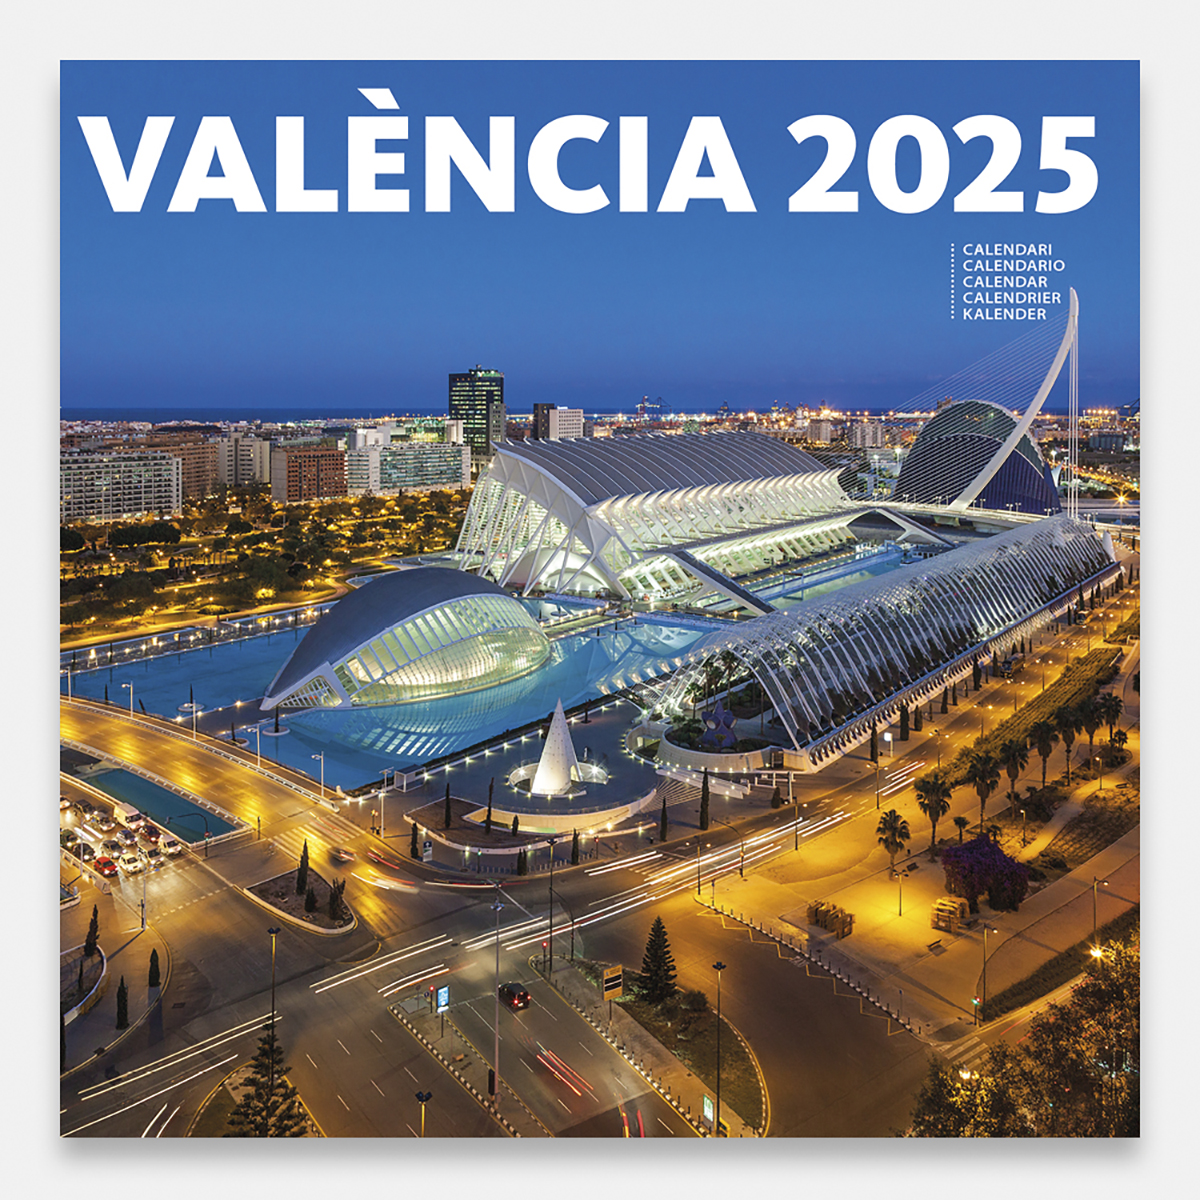 Calendar 2025 València 25valg calendario pared 2025 valencia